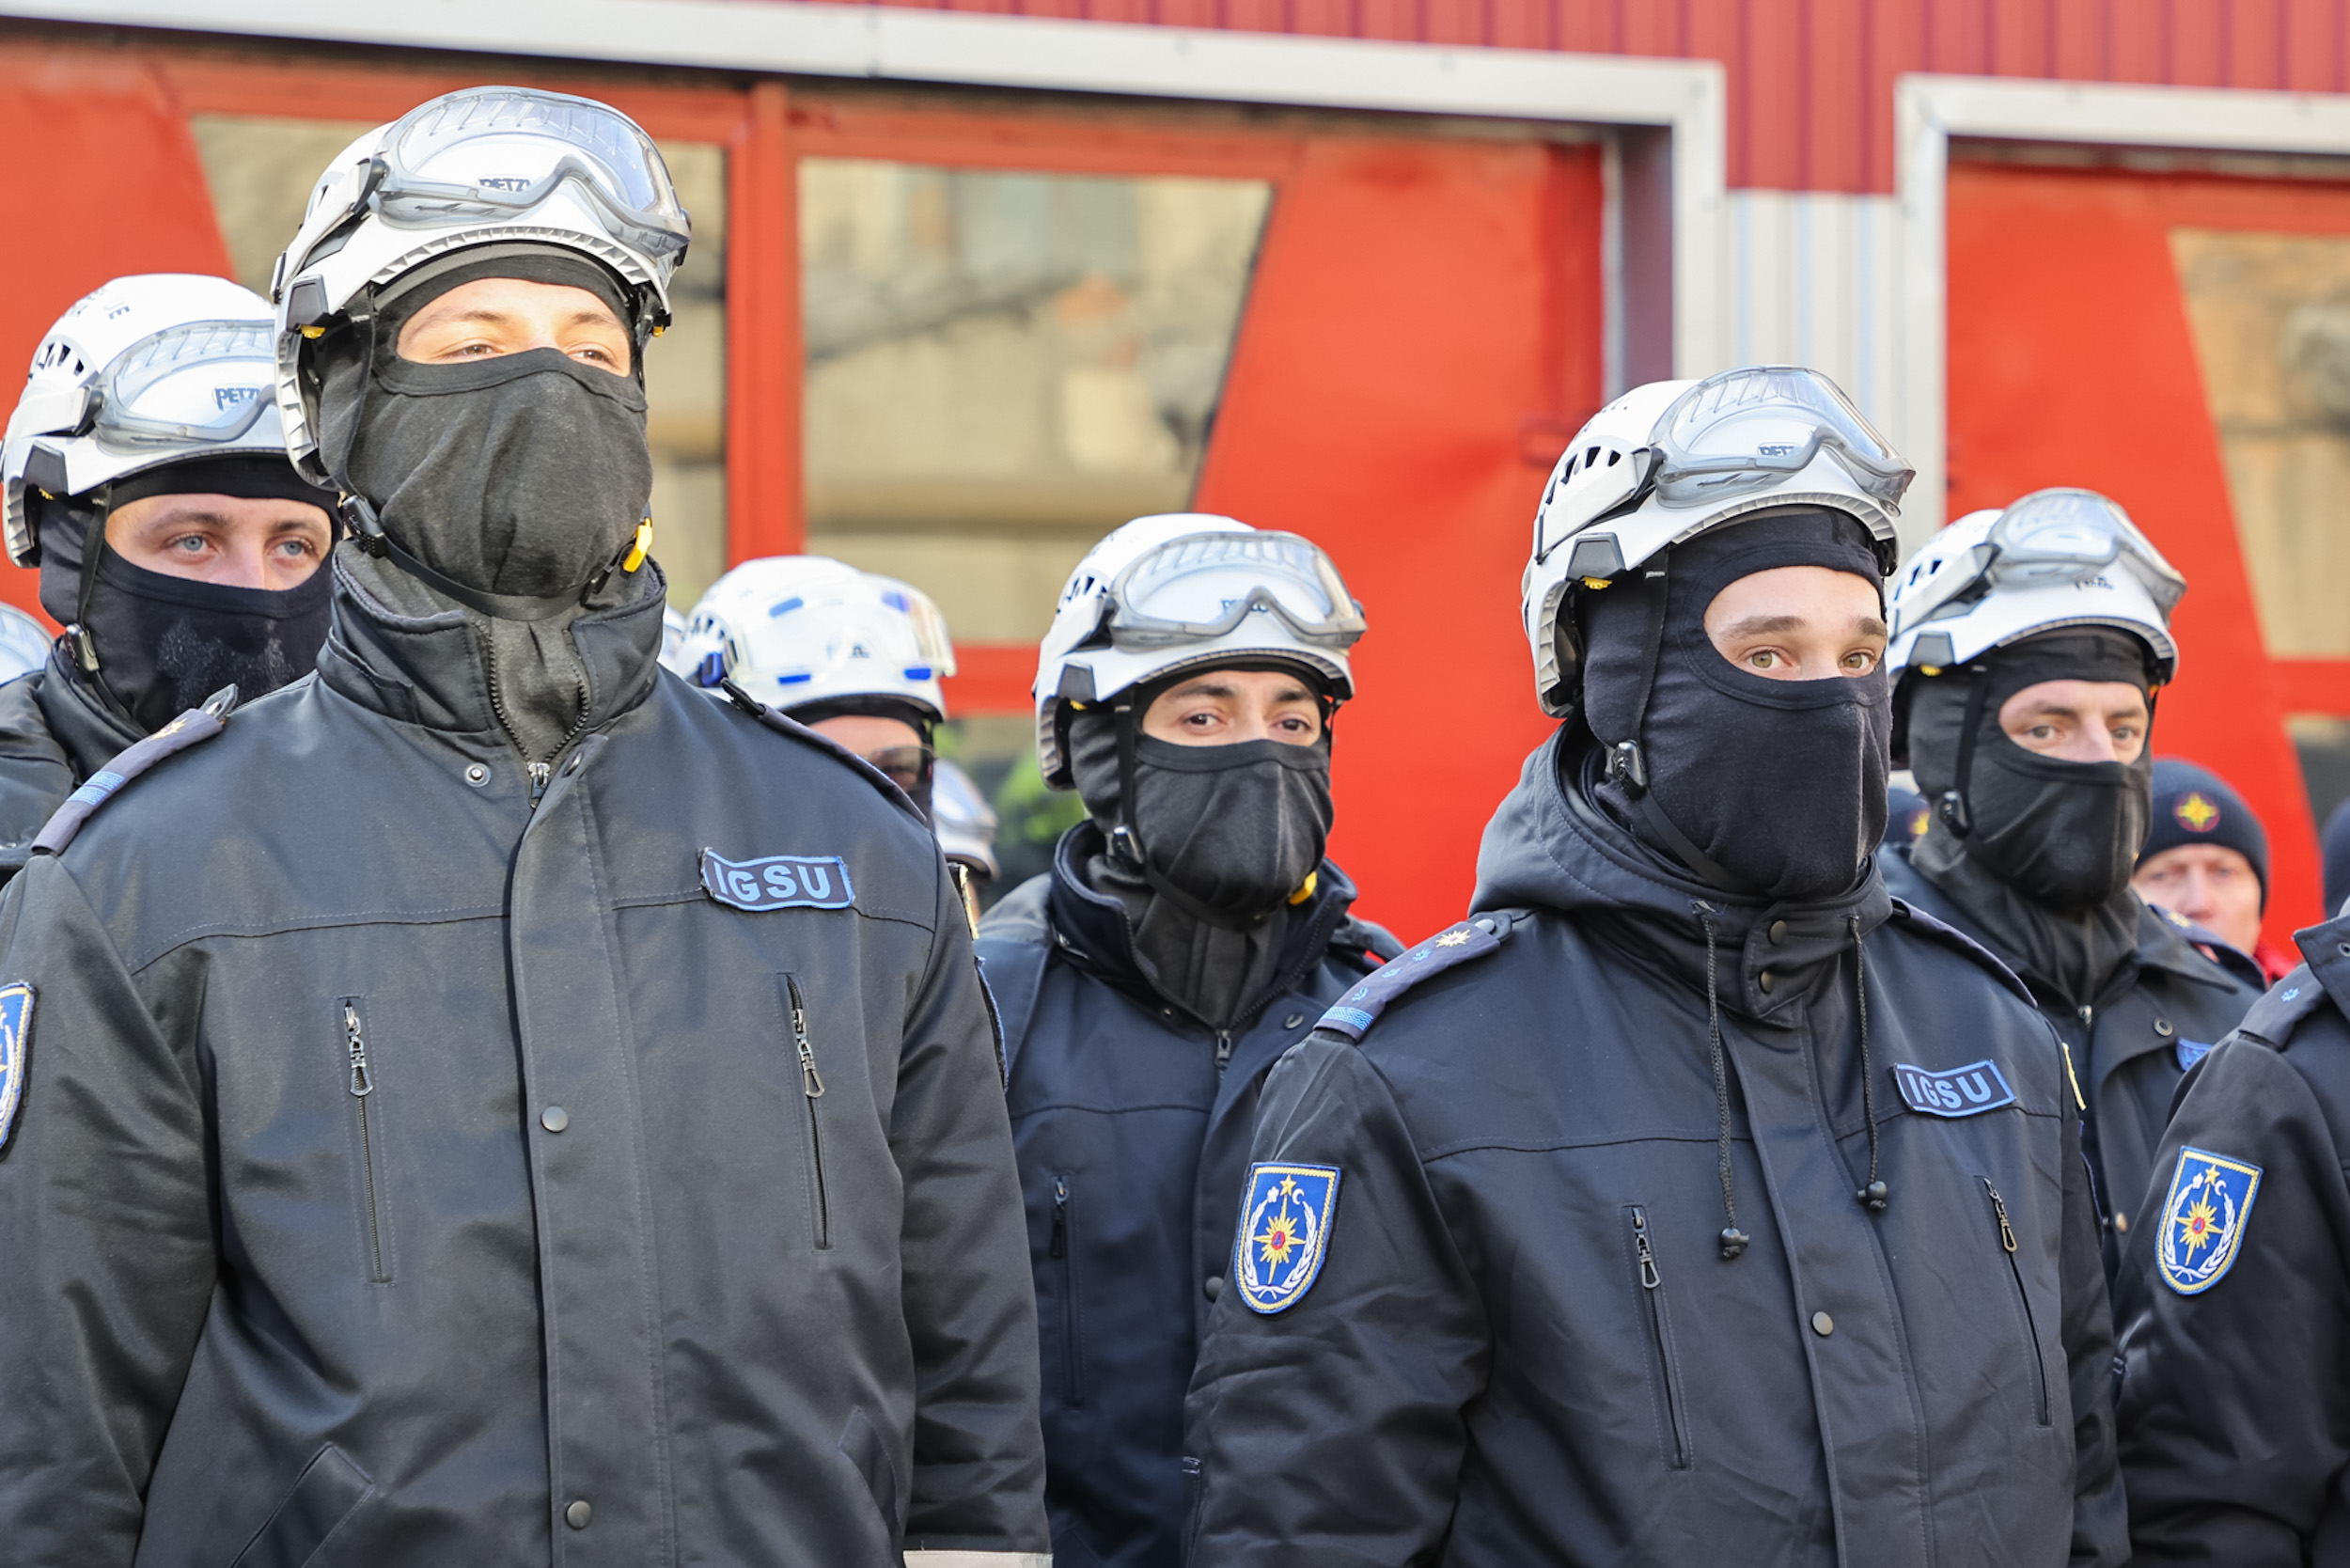 (ФОТО) В Бельцах открыли новый штаб Единой диспетчерской чрезвычайных ситуаций